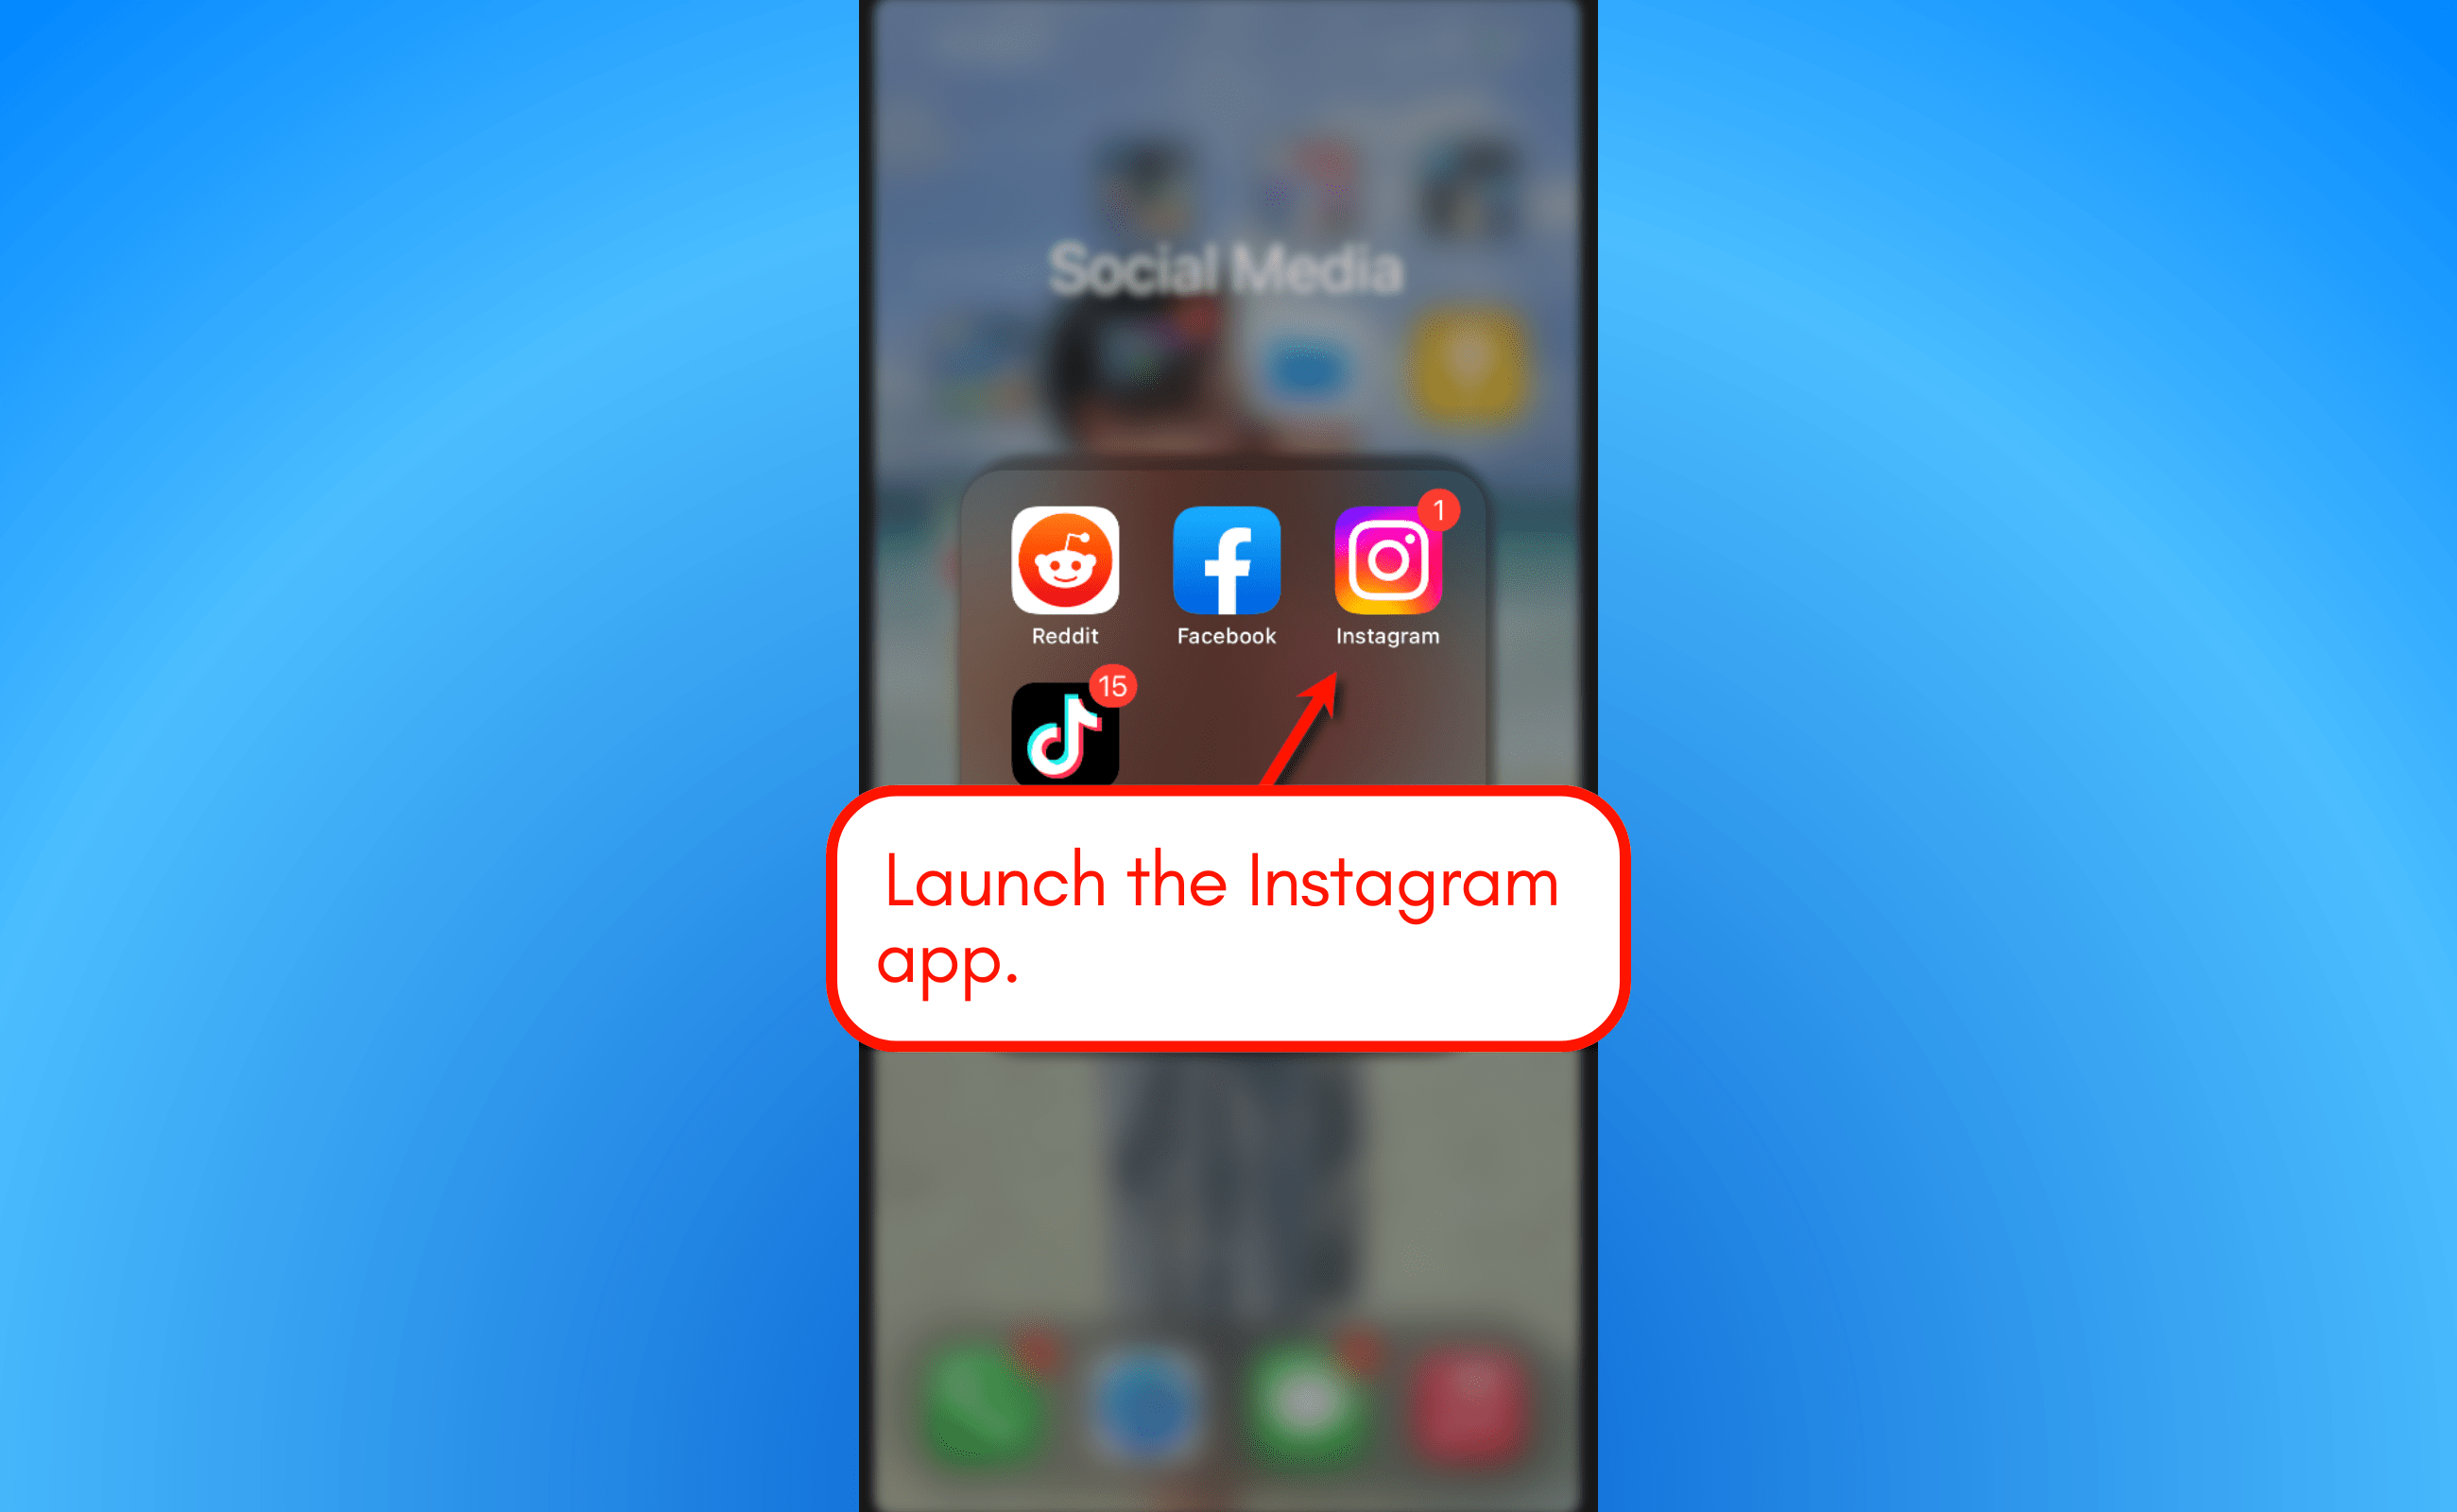 Launch the Instagram app.